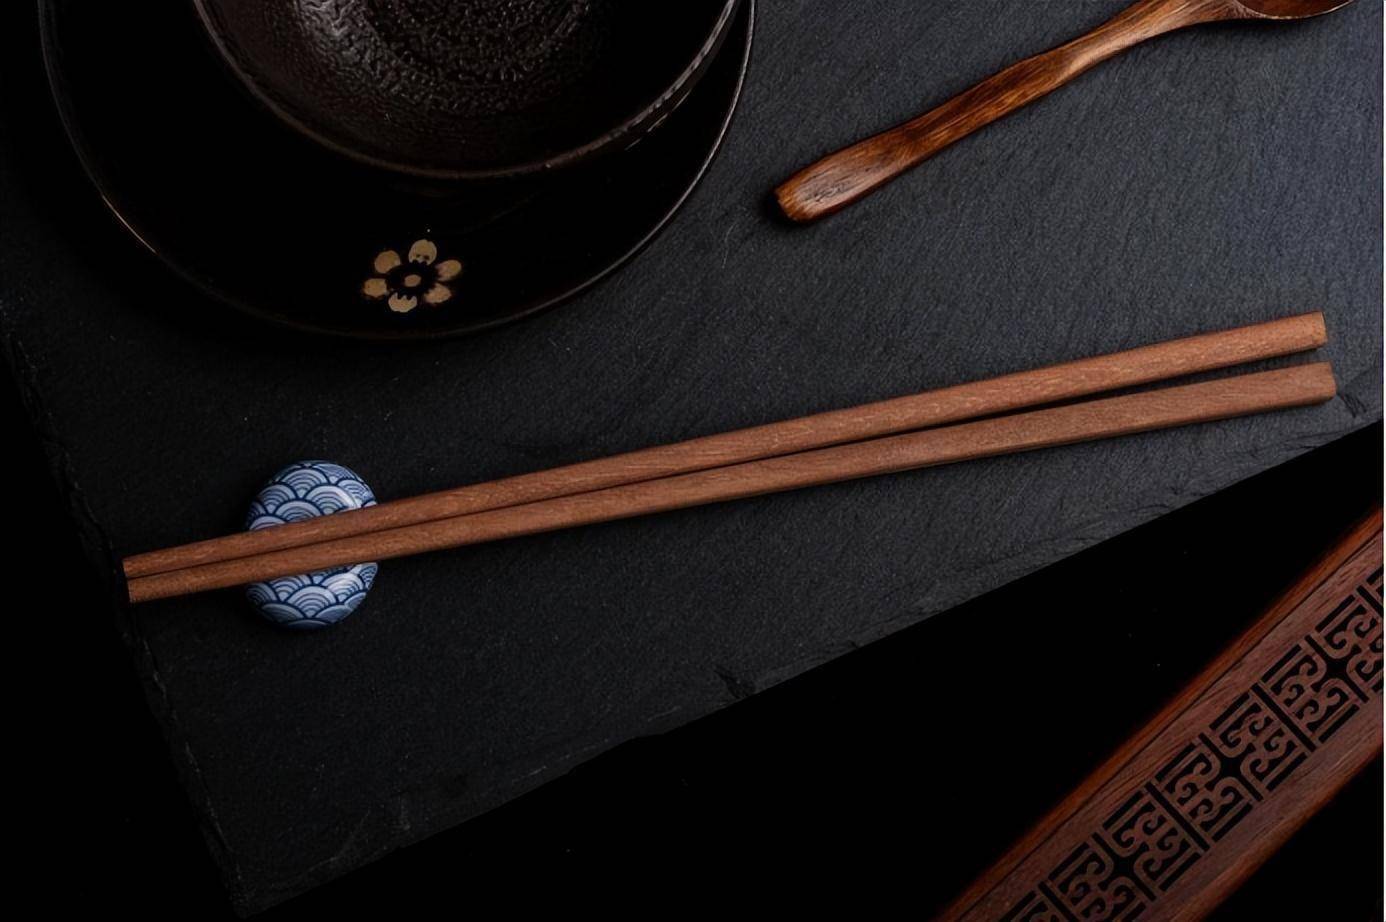 箸和筷子，一物两名，为啥筷子叫法更流行？原来都是为了避讳